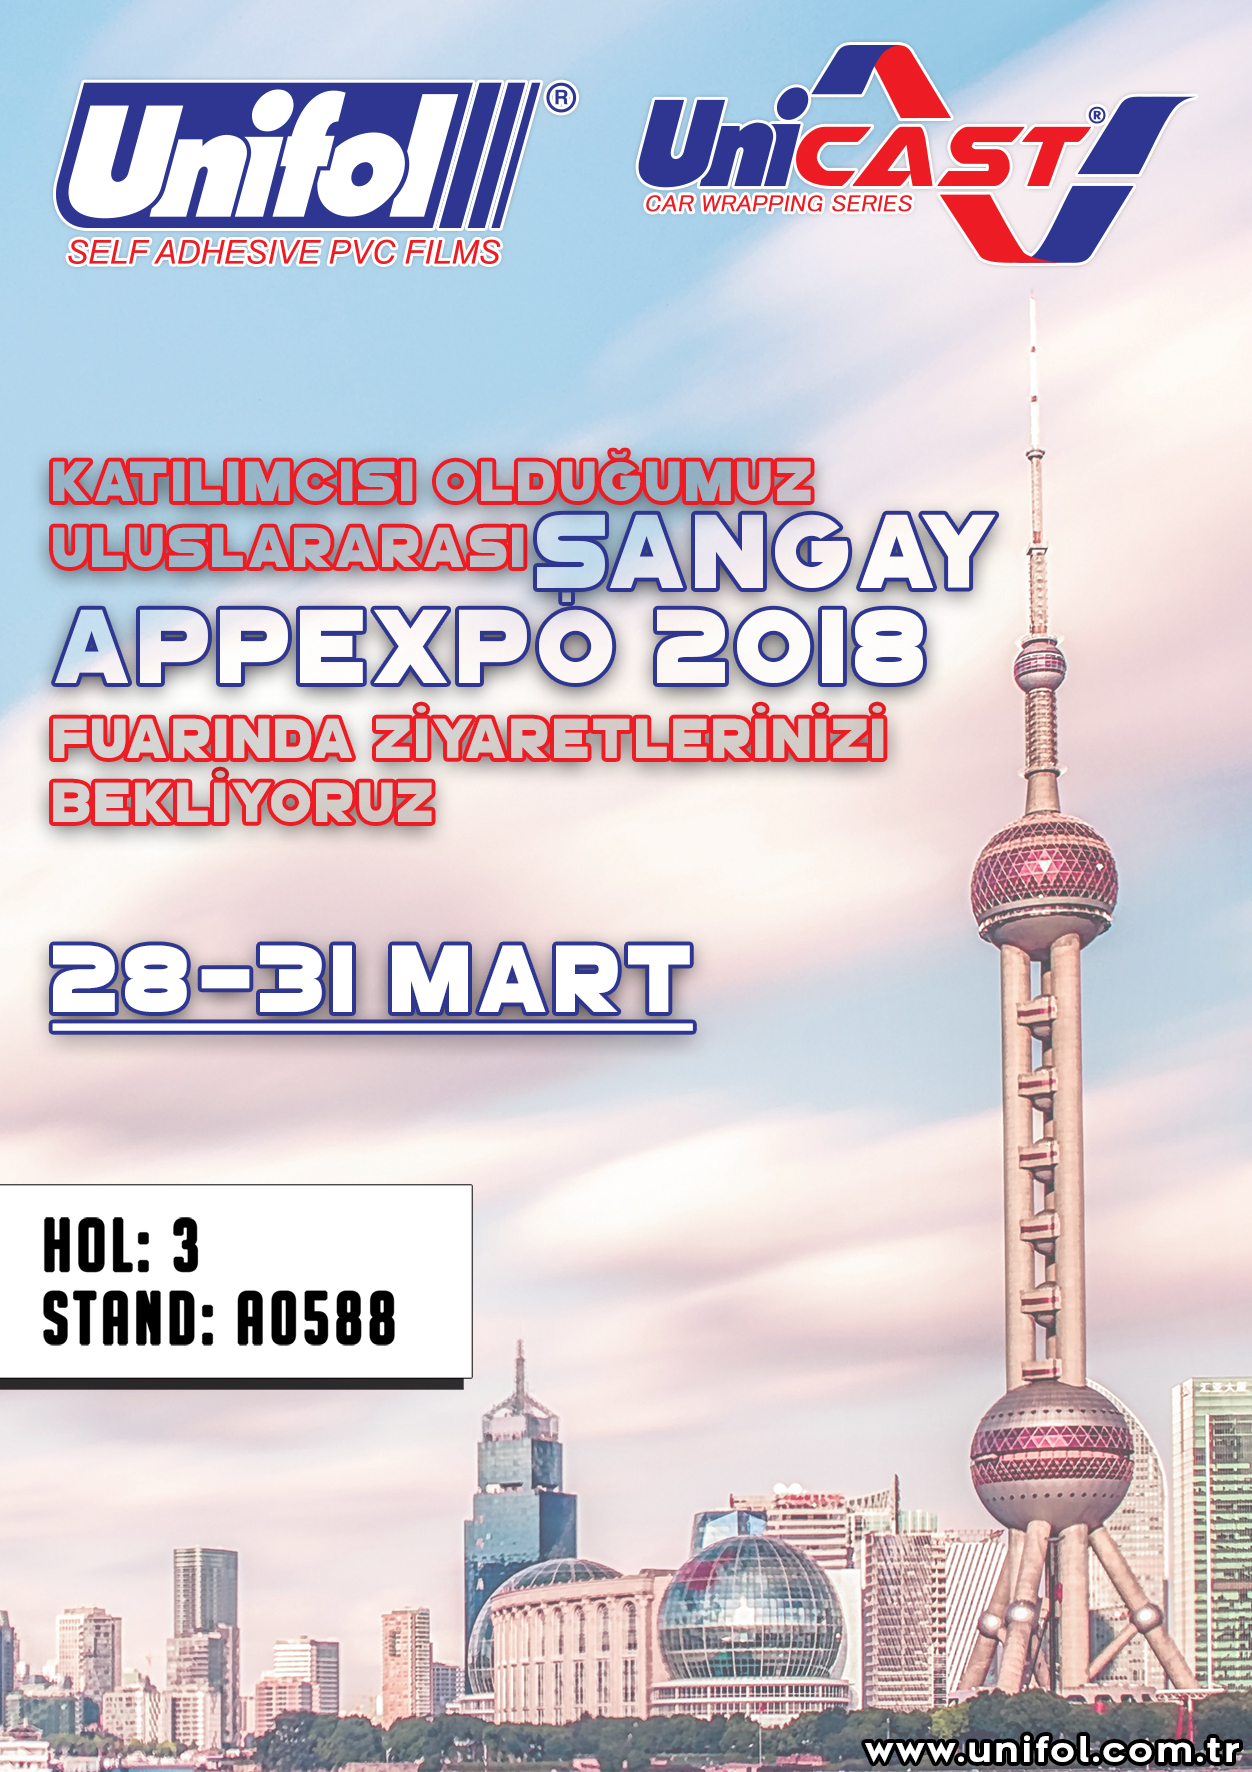 Apppexpo Shanghai 2018